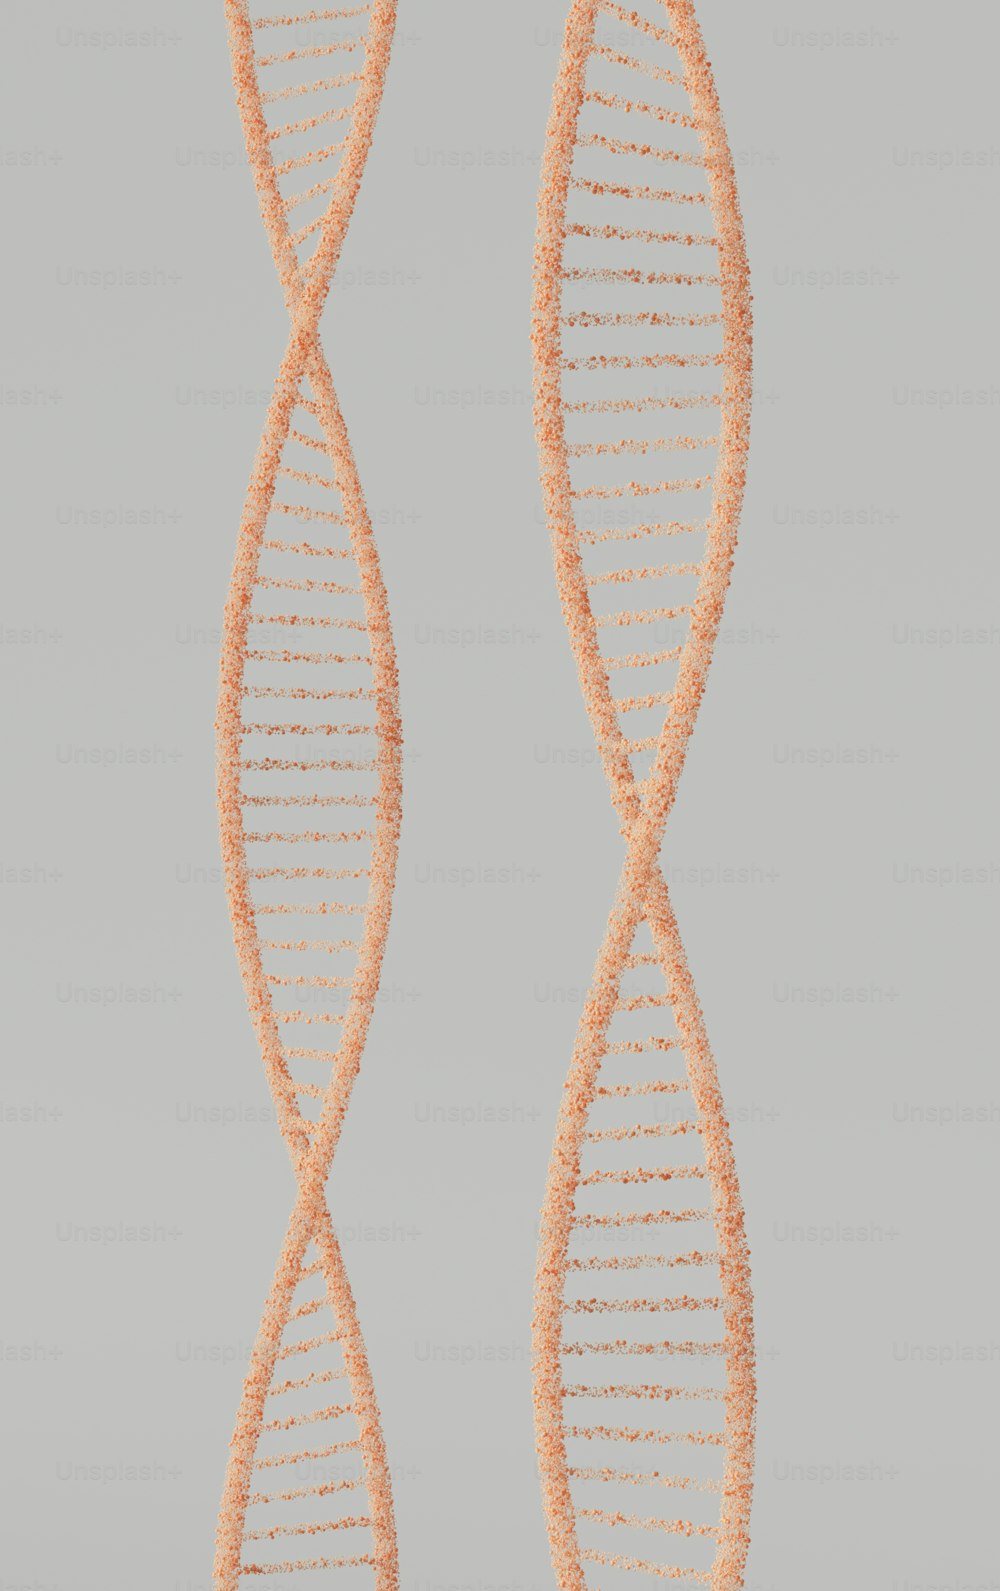 Un primer plano de una doble hebra de cuerda naranja